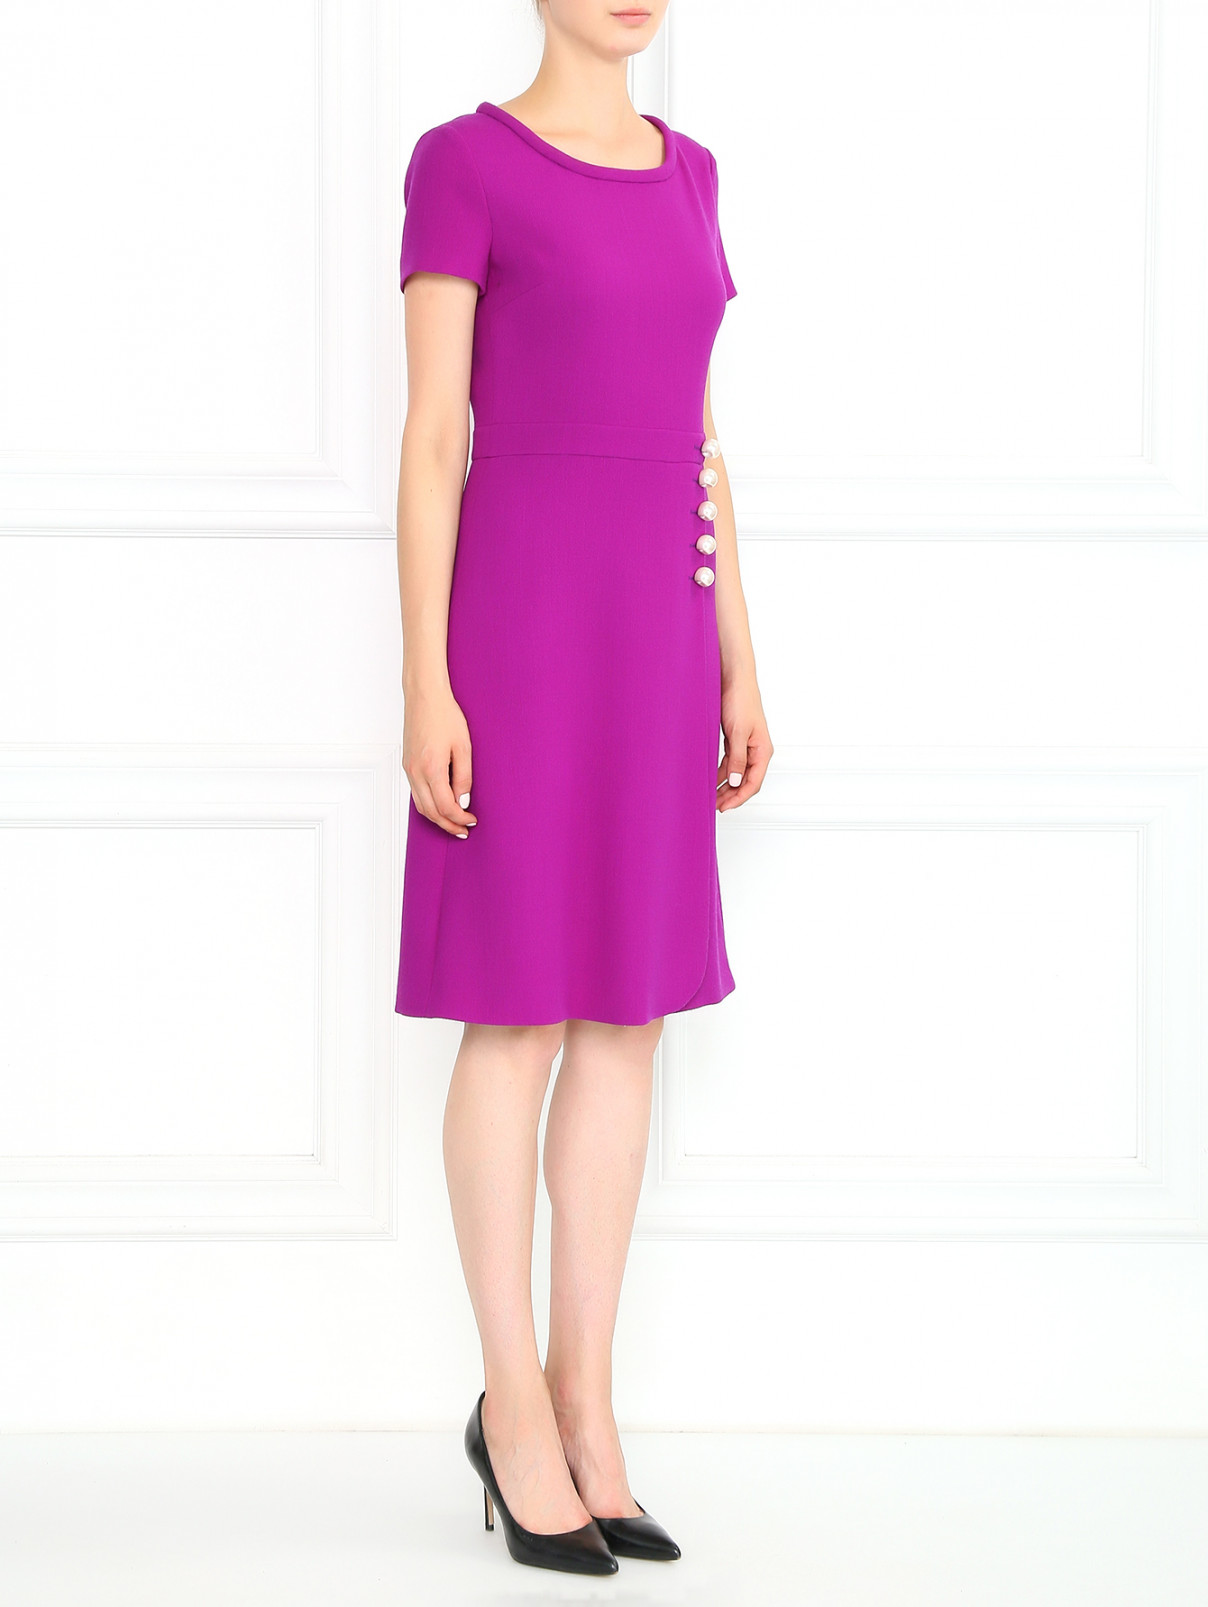 Платье-футляр из шерсти декорированное бусинами Moschino Boutique  –  Модель Общий вид  – Цвет:  Фиолетовый